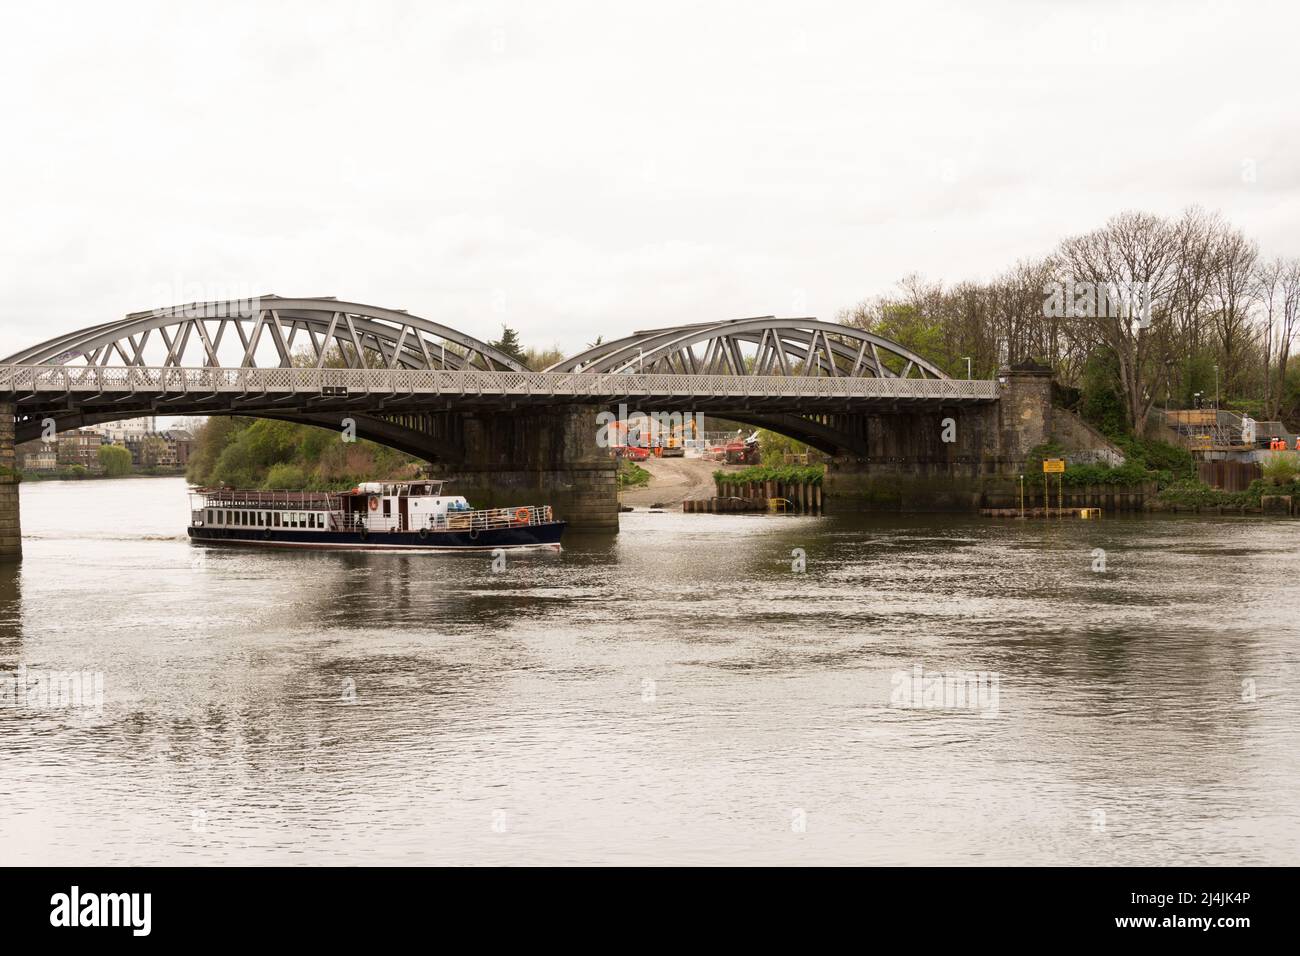 Un bateau de plaisance vide passant sous le pont Barnes sur la Tamise à Barnes, dans le sud-ouest de Londres, Angleterre, Royaume-Uni Banque D'Images